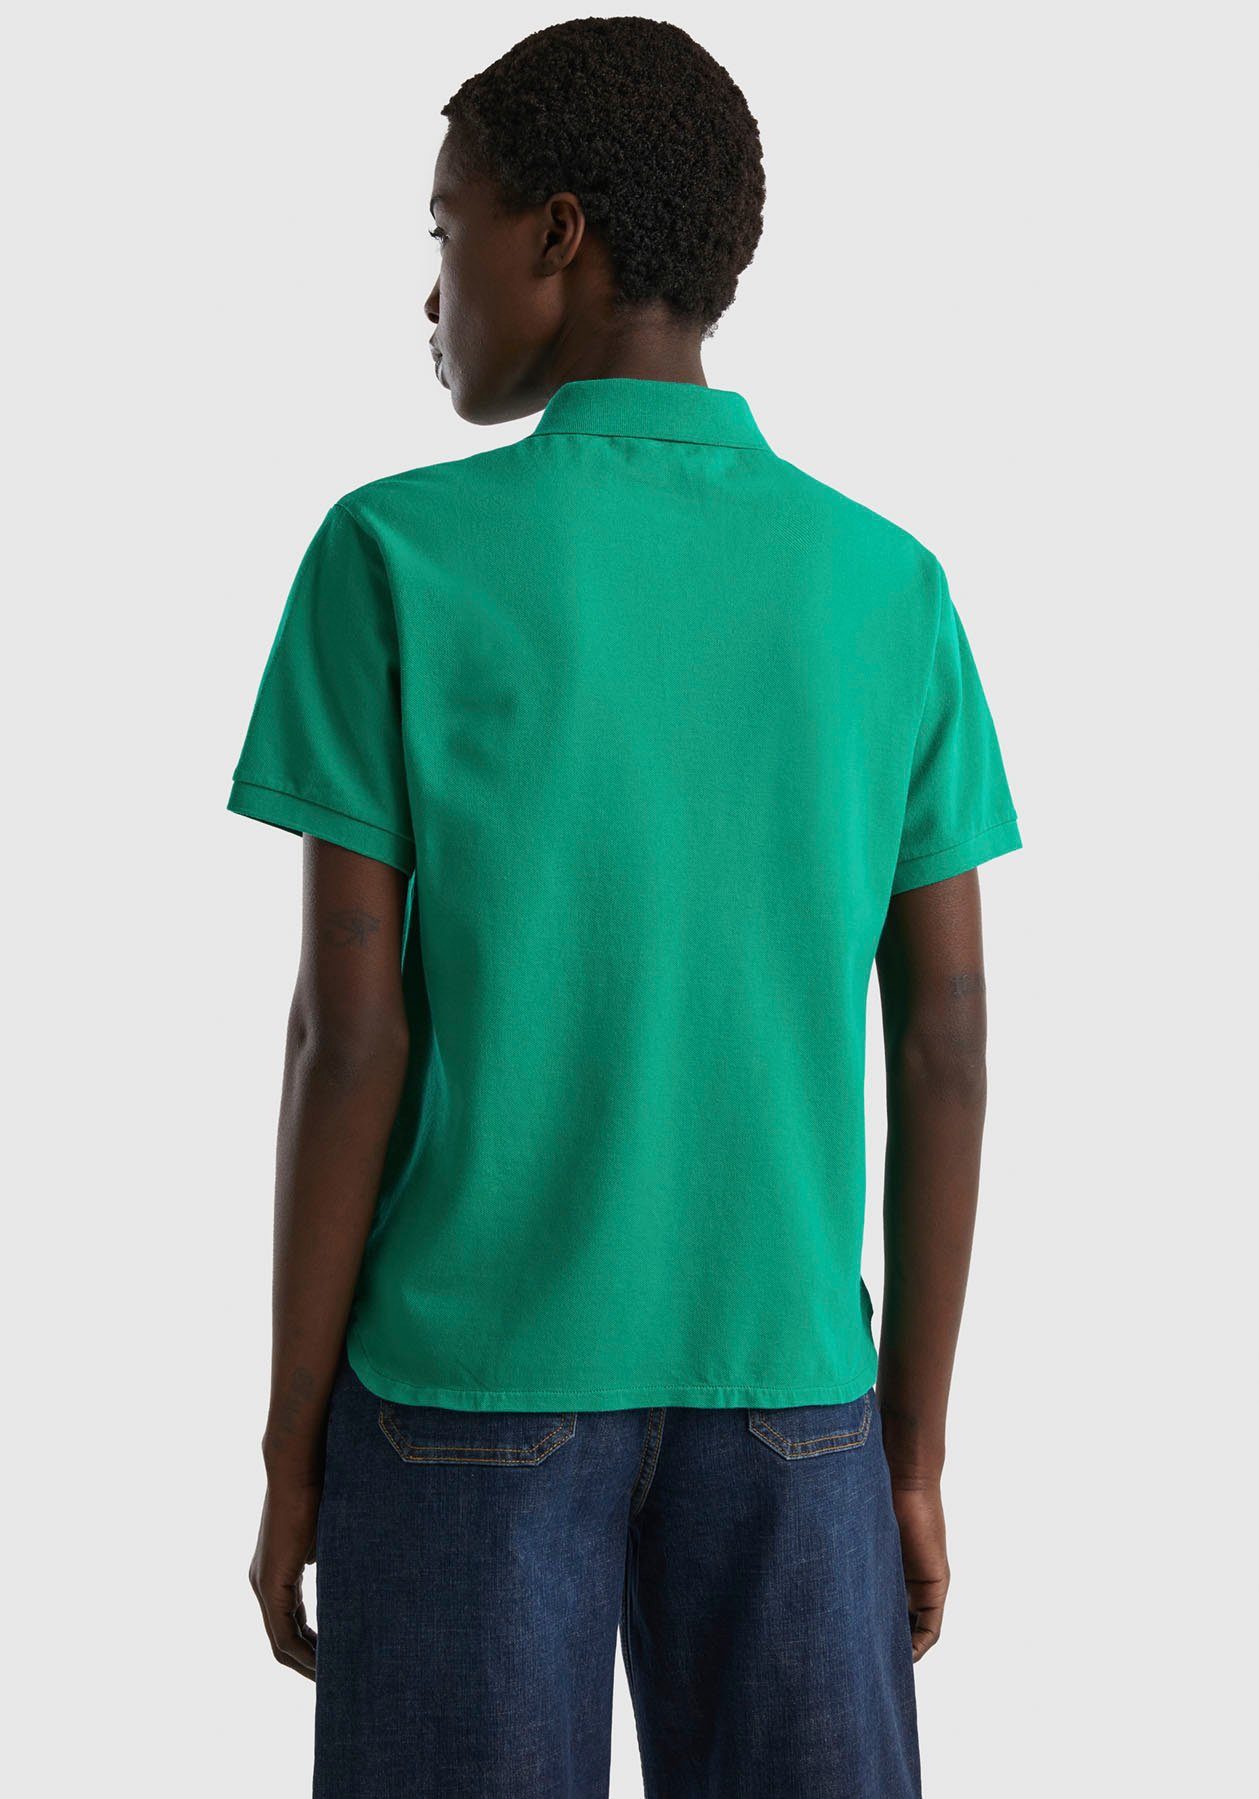 grün Benetton Poloshirt Knöpfen perlmuttfarbenen Colors of mit United